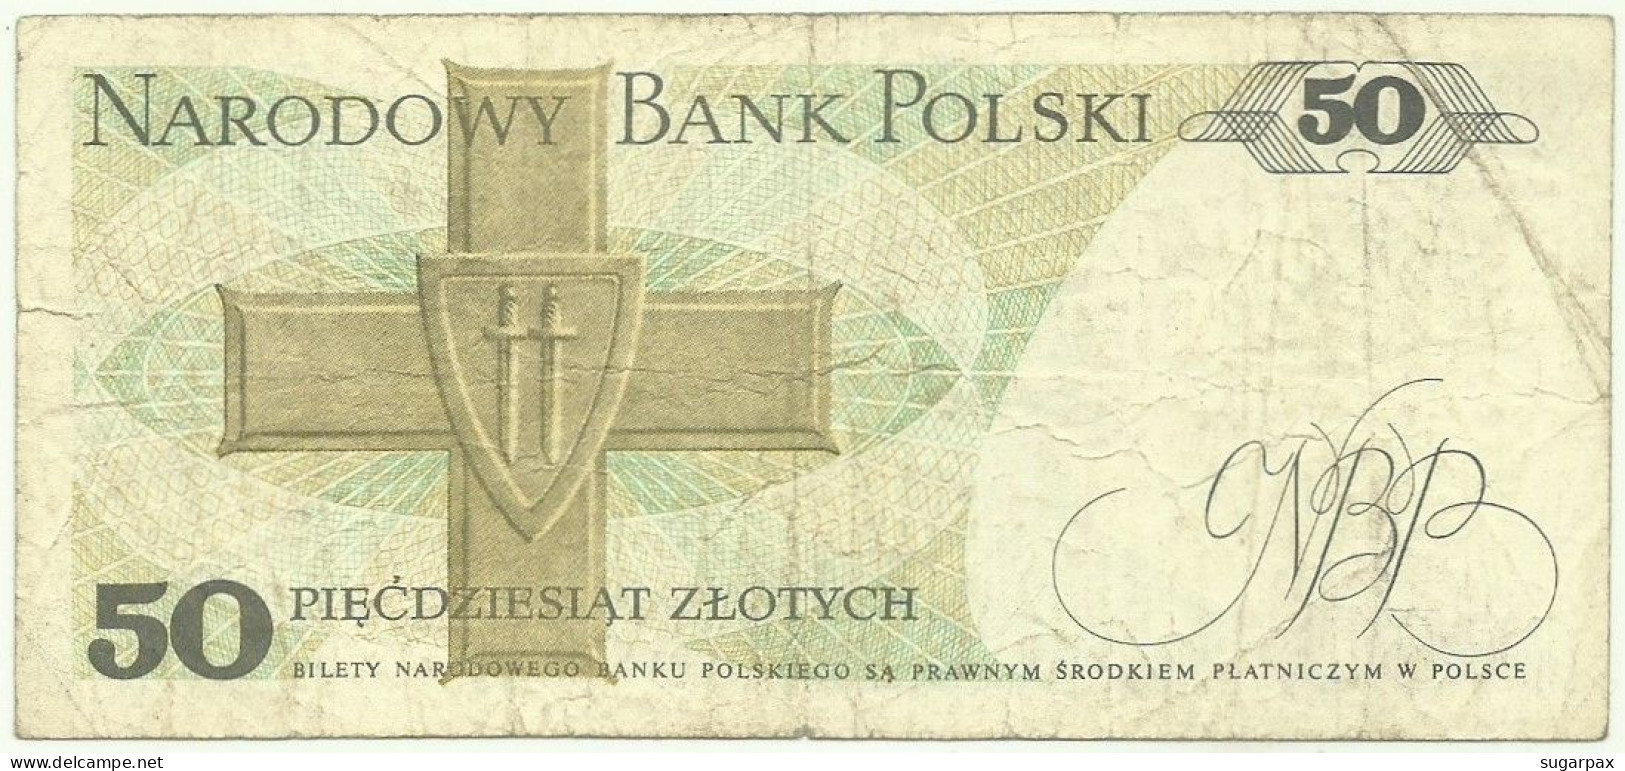 POLAND - 50 Zlotych - 1988 - Pick 142.c - Série HC - Narodowy Bank Polski - Pologne